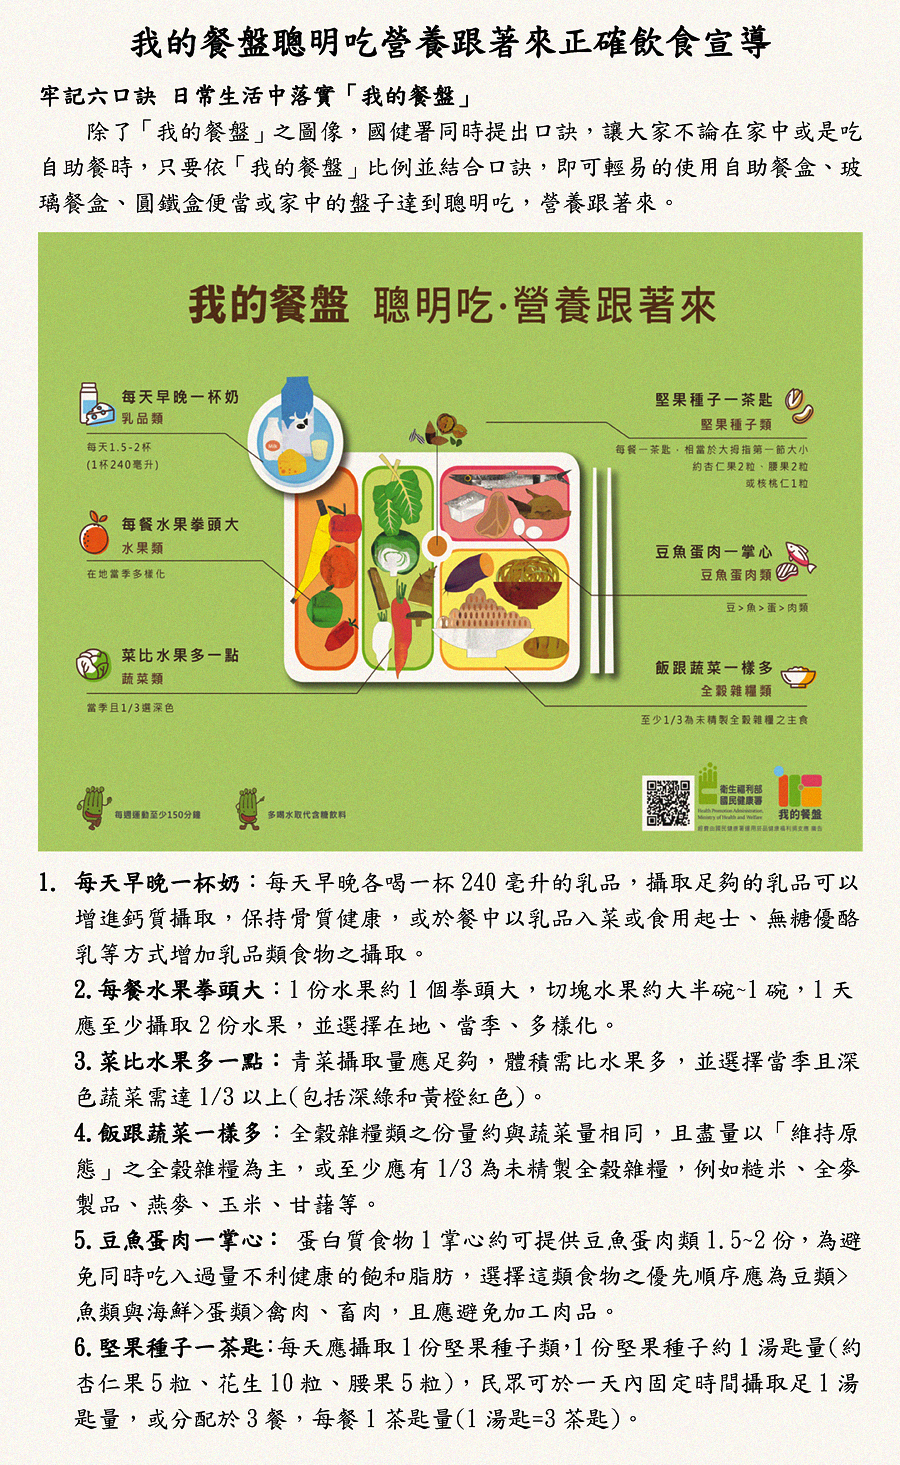 斗六市衛生所辦理「我的餐盤聰明吃，營養跟著來」宣導活動   【斗六巿衛生所關心您】